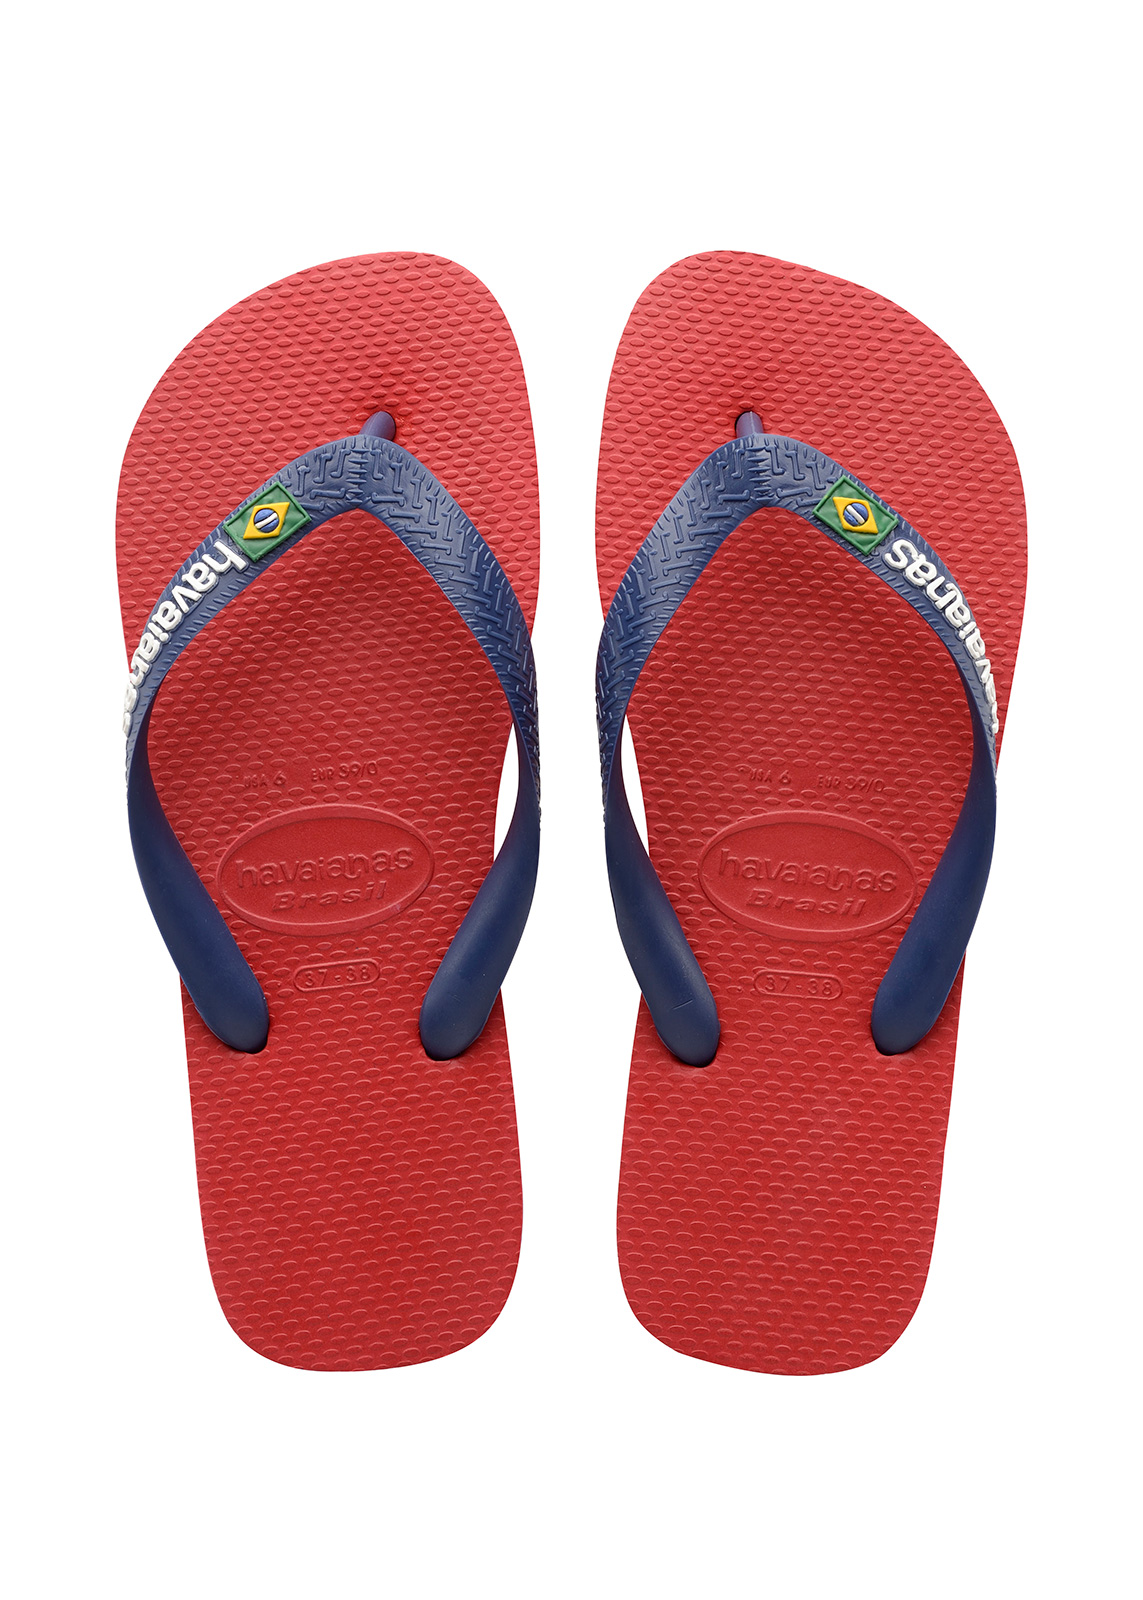 Rode jongens slippers Havaianais - Brasil logo Red